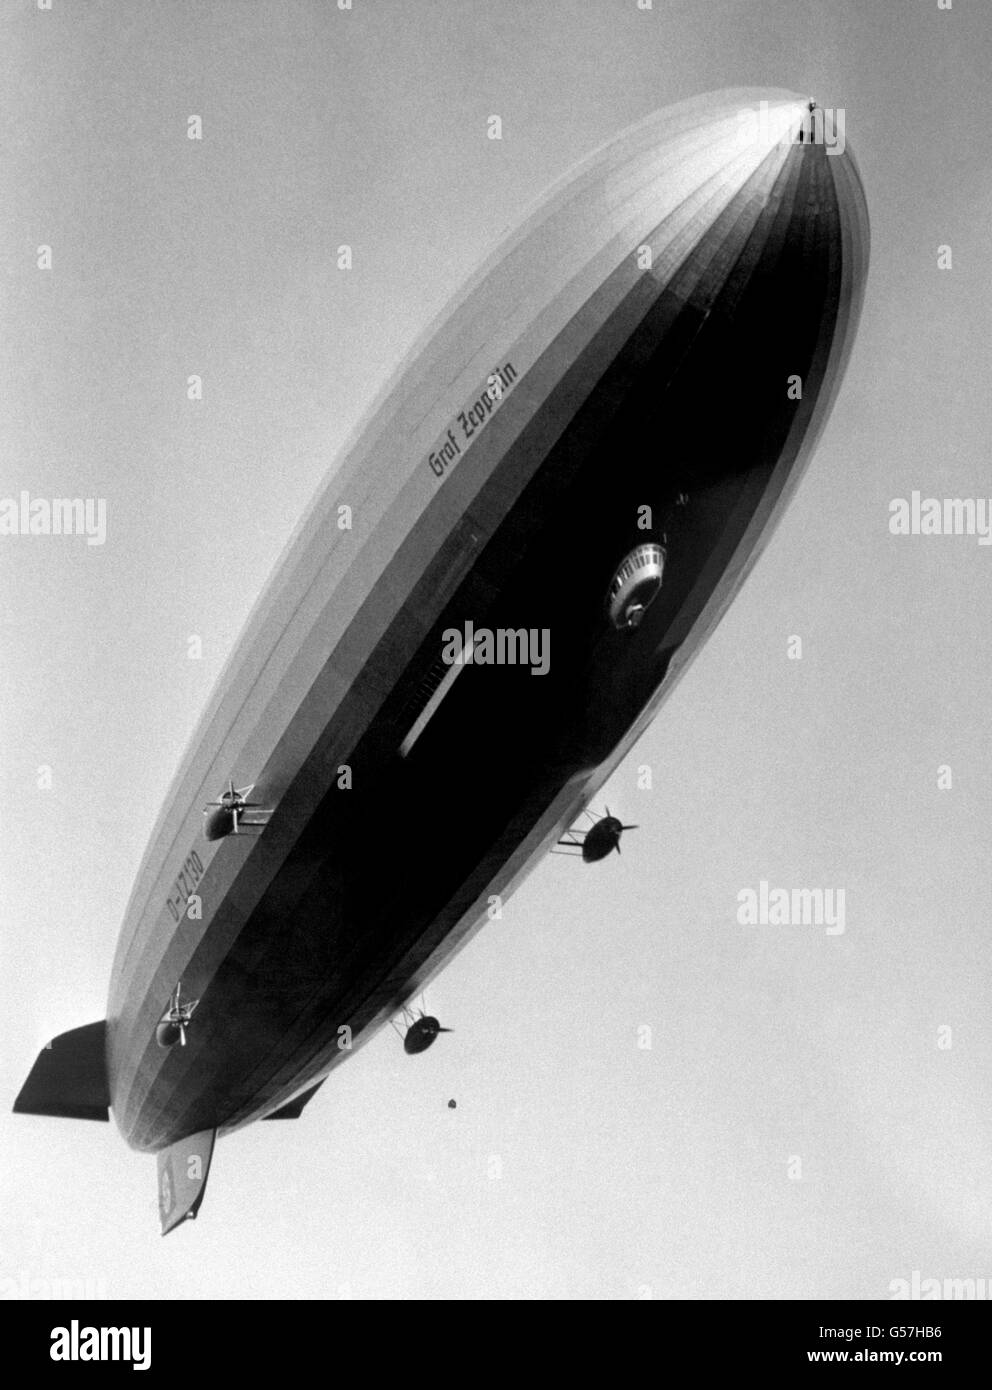 GRAF ZEPPELIN: Le navire allemand 'Graf Zeppelin' à l'aéroport de Lowenthal après son vol inaugural.Le 29 août 1929, le navire a fait l'histoire lorsqu'il a voyagé dans le monde entier en 21 jours, 7 heures et 26 minutes Banque D'Images